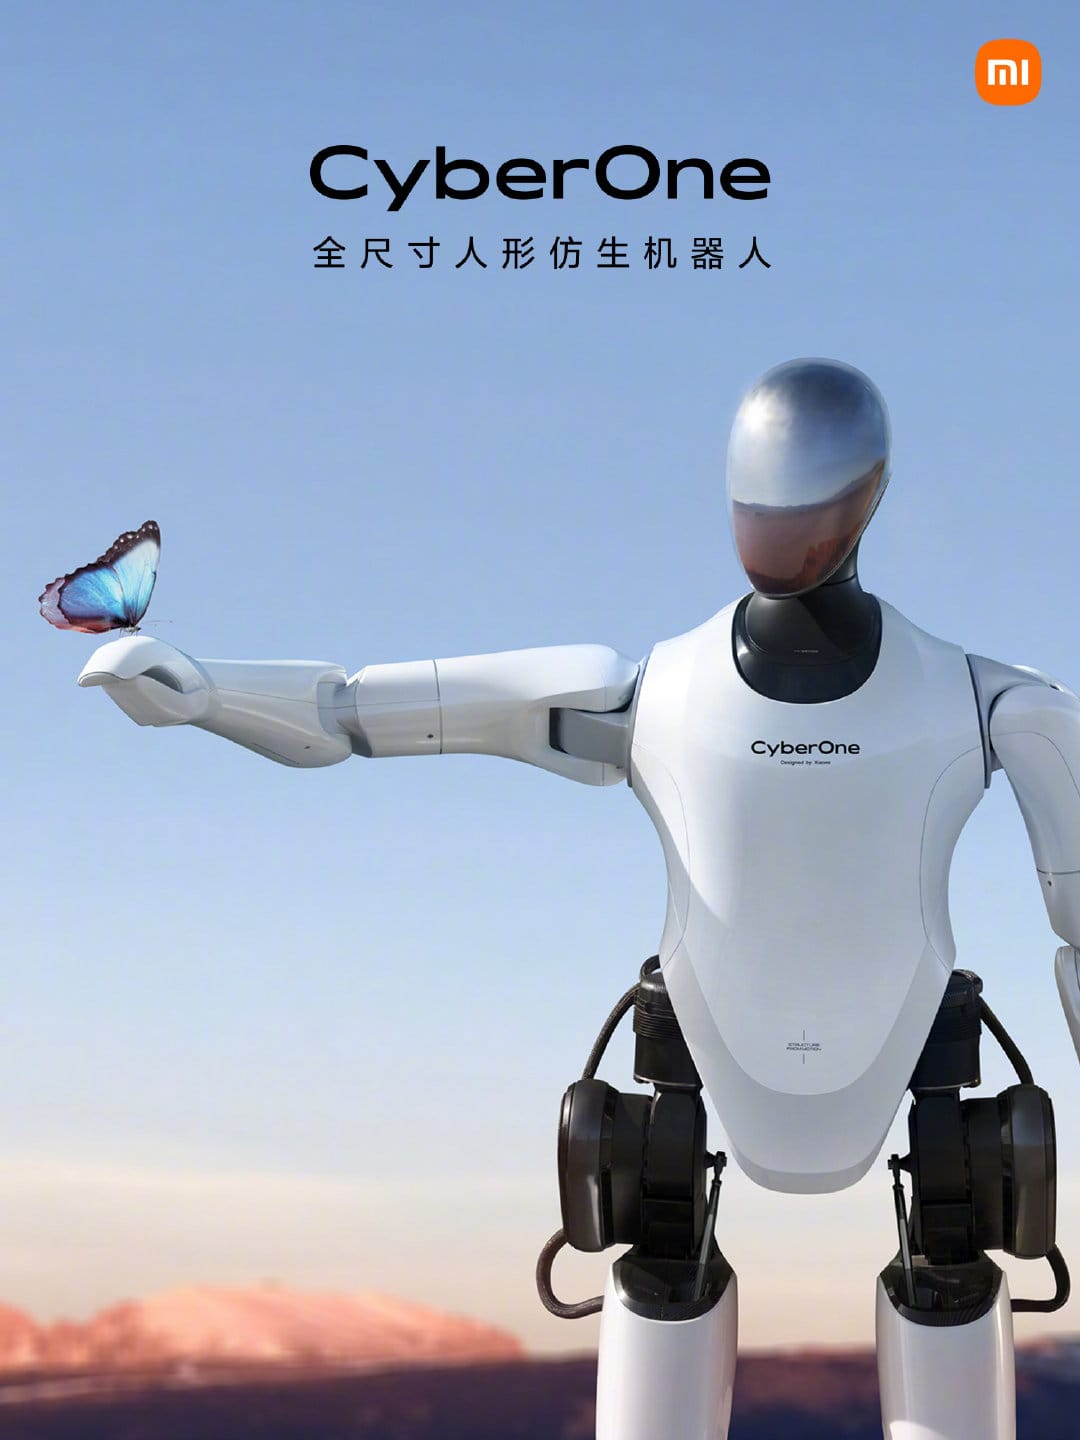 China's Robotics Revolution: From Fast Follower to Innovation Leader?